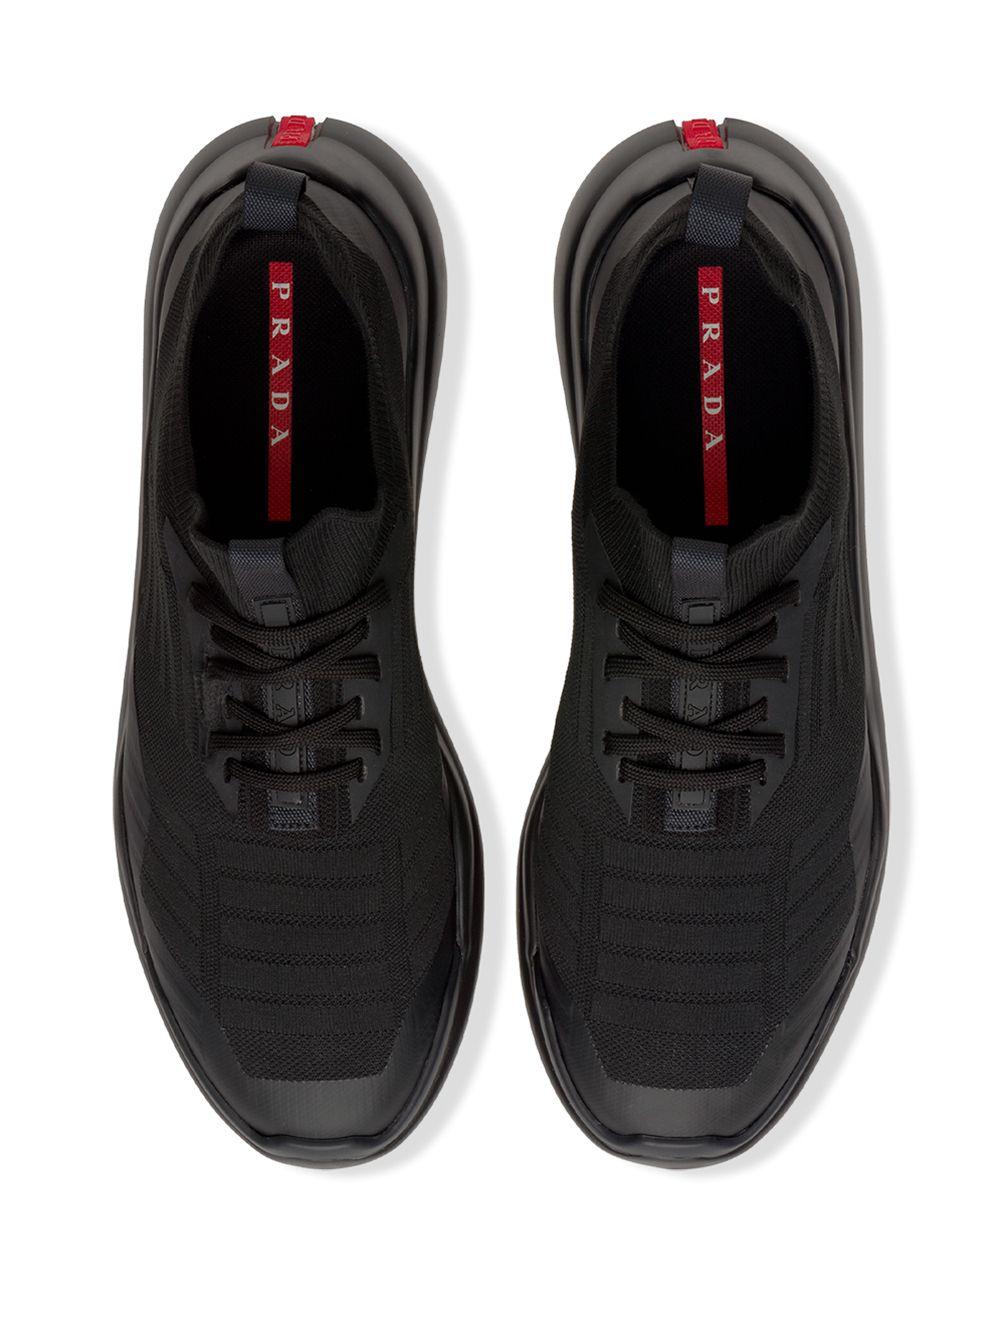 Prada Toblach Techno Knit Lr Sneakers in Black for Men - Lyst